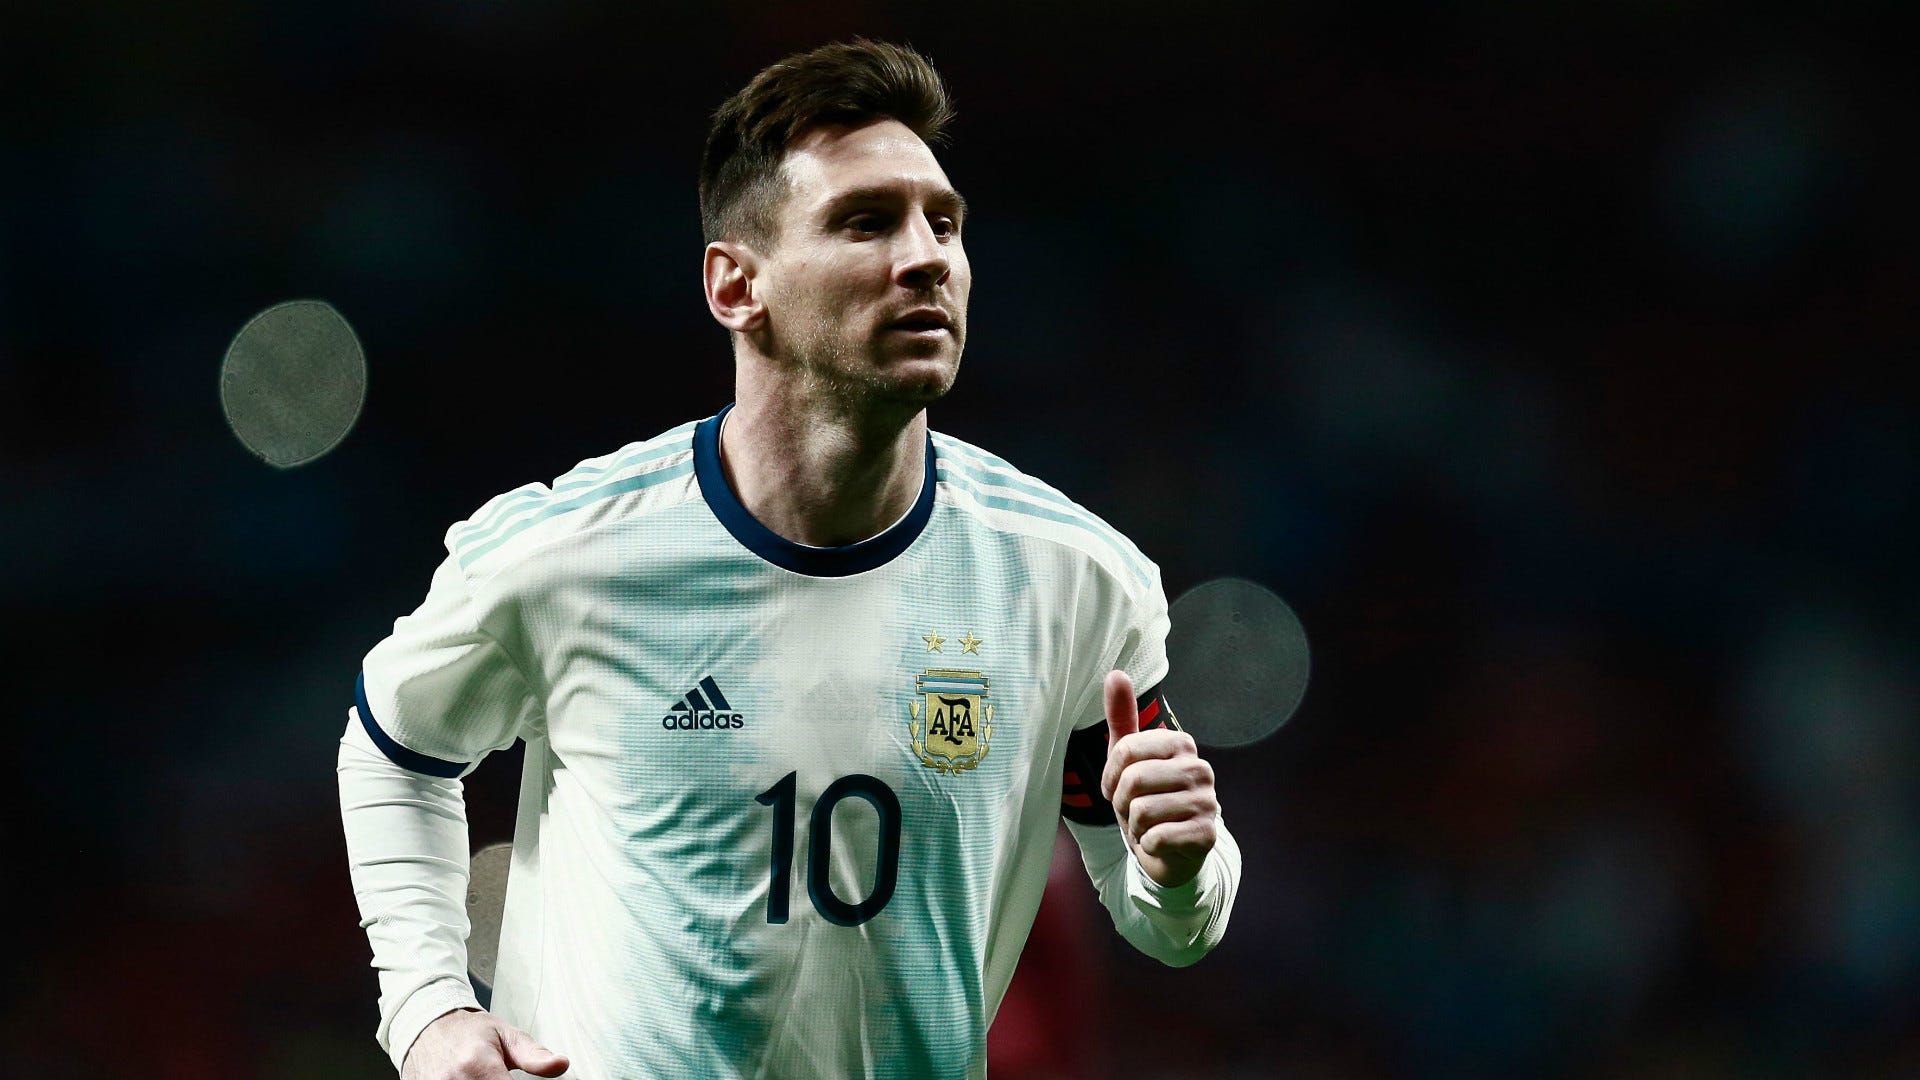 Cùng đến với hình ảnh mới nhất của Messi chấn thương. Nhìn thấy chân sút của Argentina trong một tình huống khó khăn, chắc chắn sẽ khiến bạn ấm lòng và động viên anh chàng sớm trở lại sân cỏ.